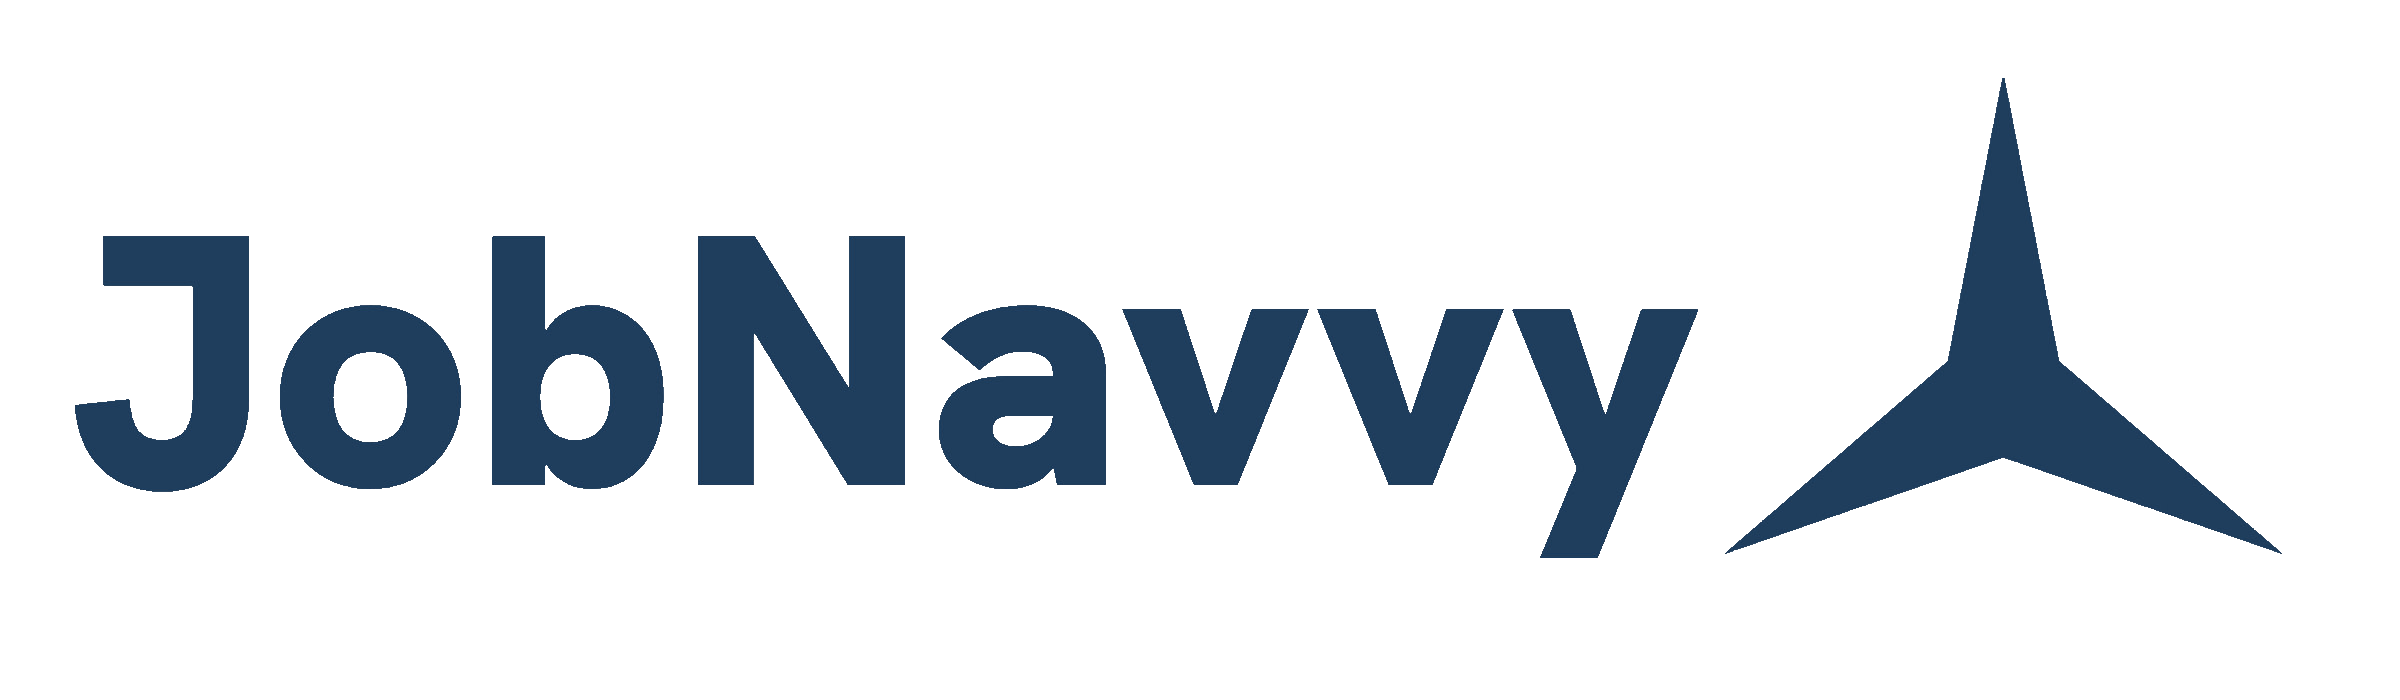 JobNavvy's logo